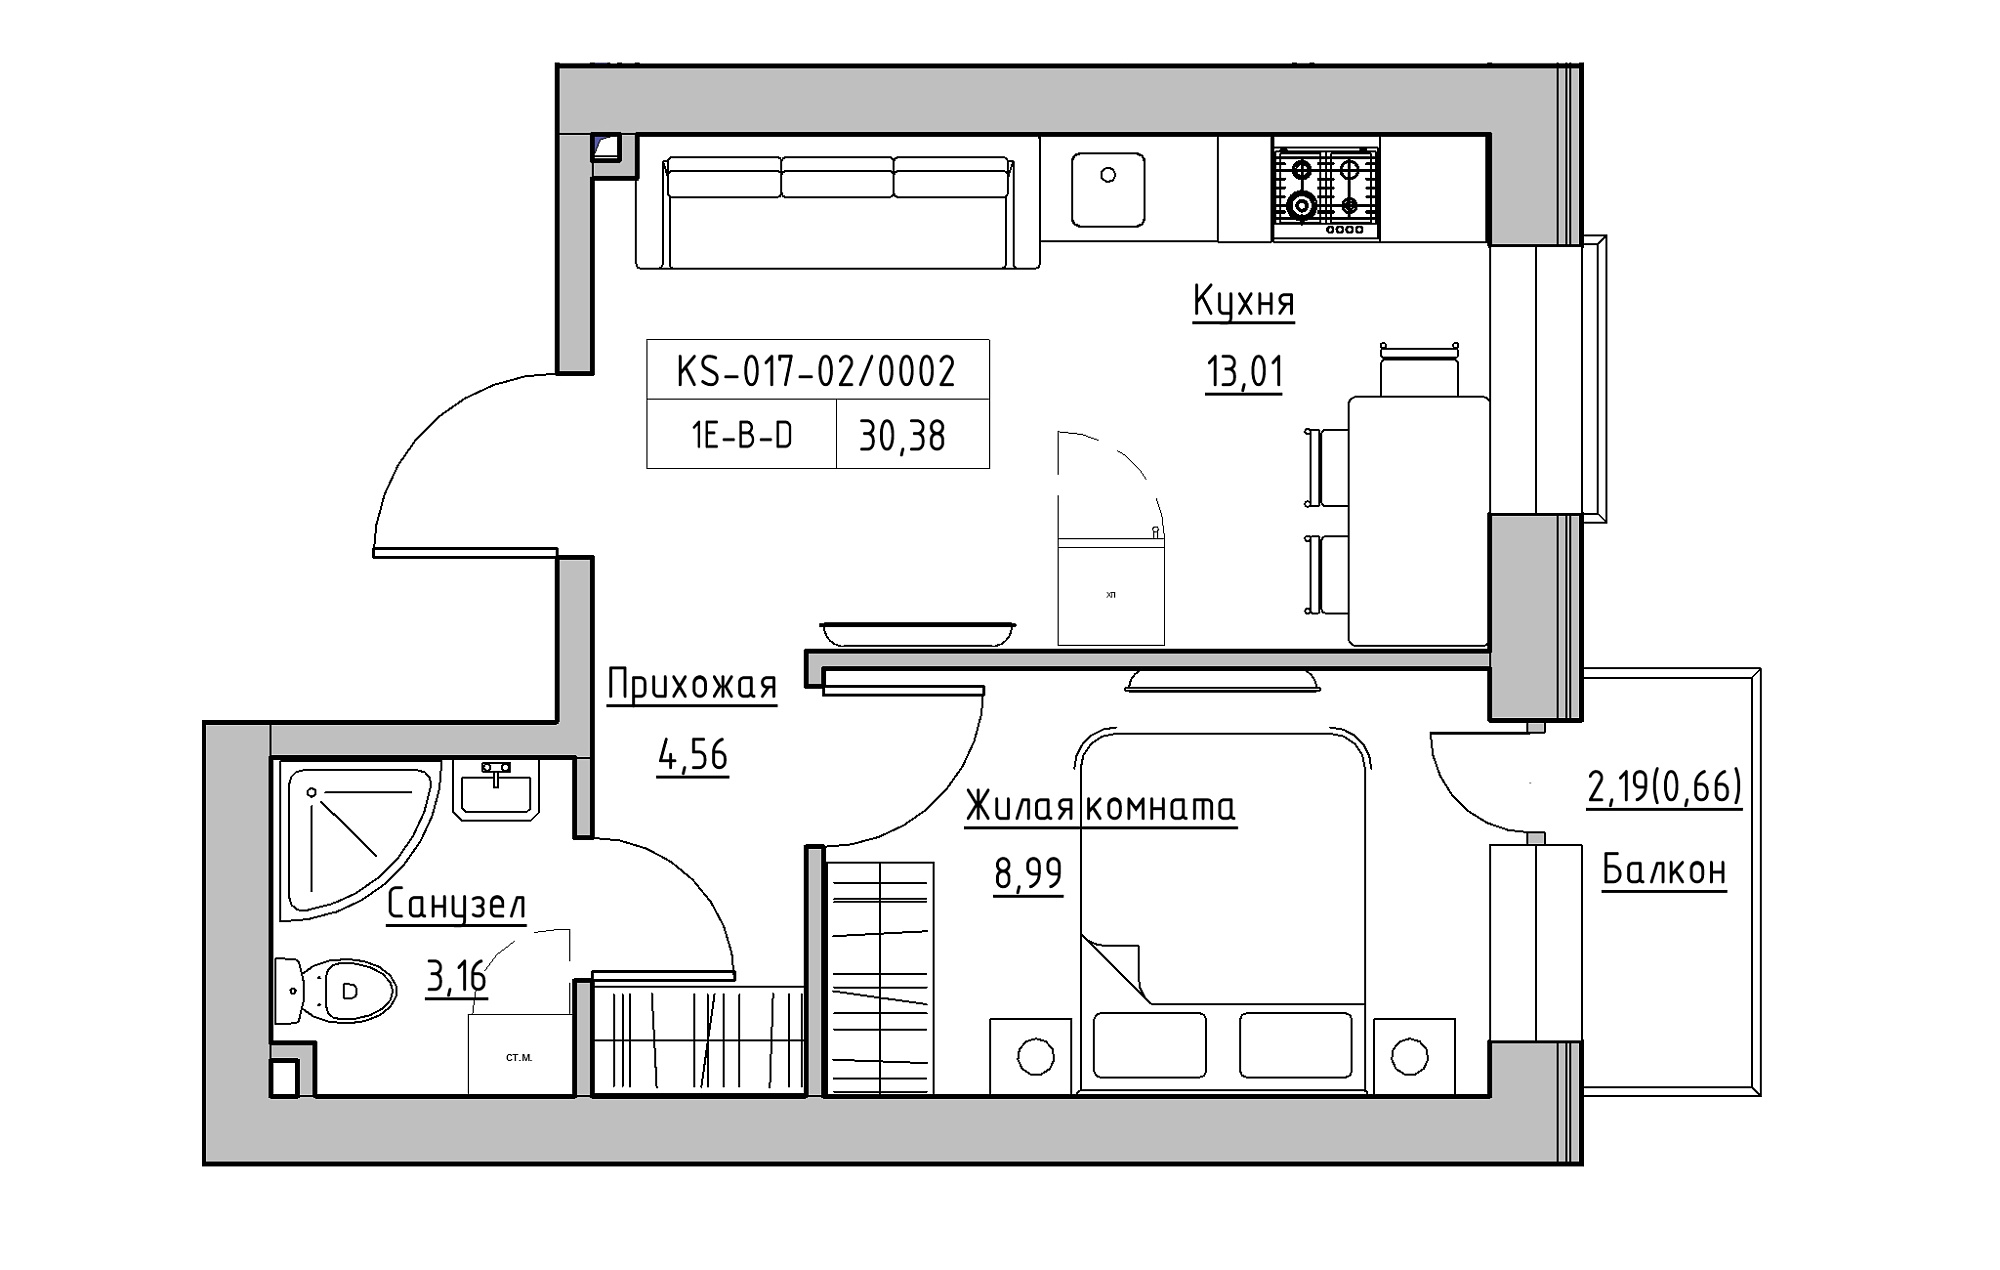 Планування 1-к квартира площею 30.38м2, KS-017-02/0002.